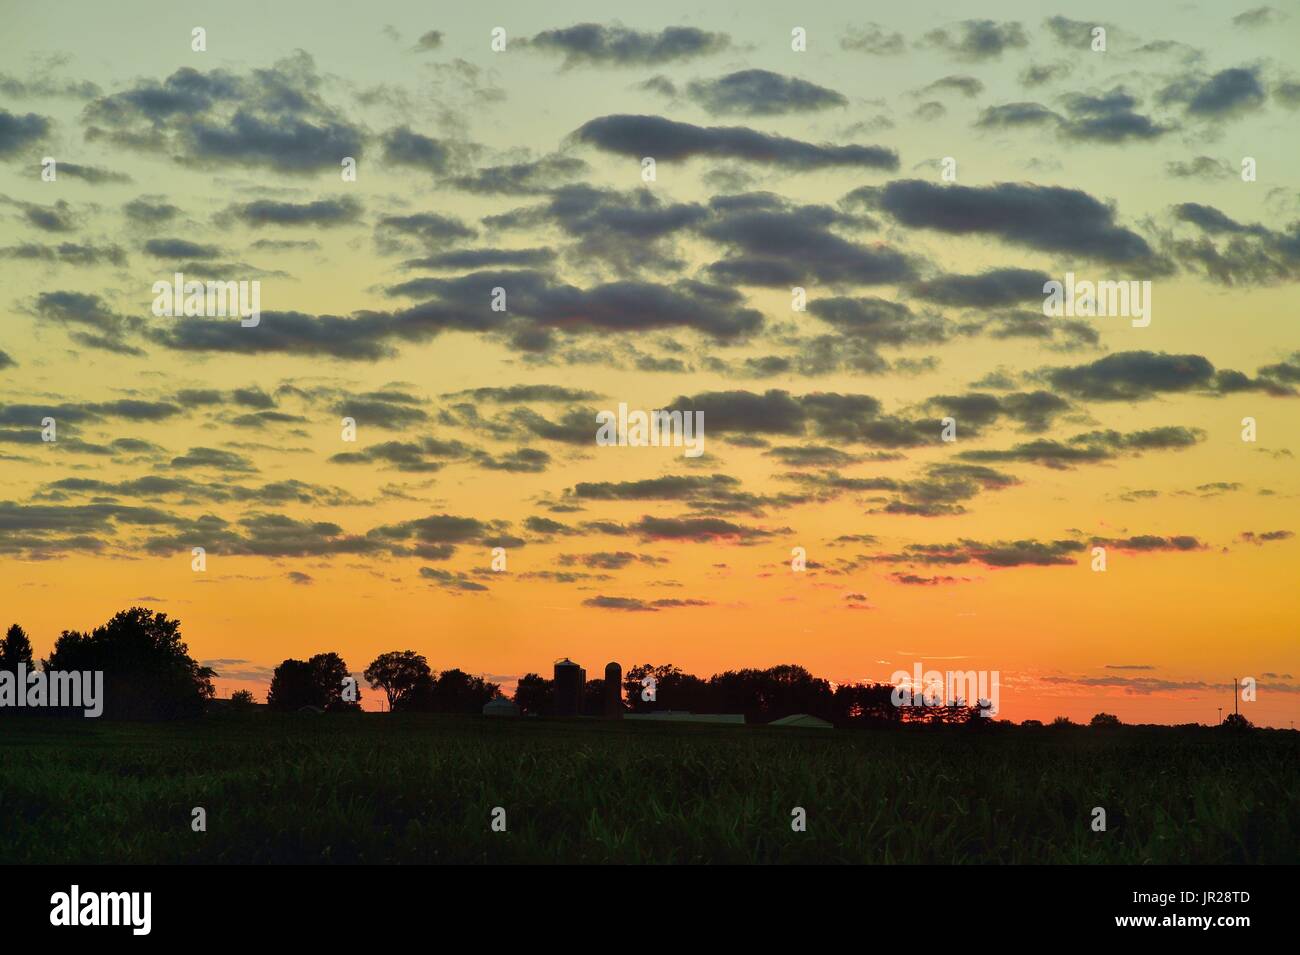 Burlington, Illinois, EE.UU. El tiempo justo encima de drifting clouds farm país agregar textura y color a un atardecer de verano vivo ya. Foto de stock